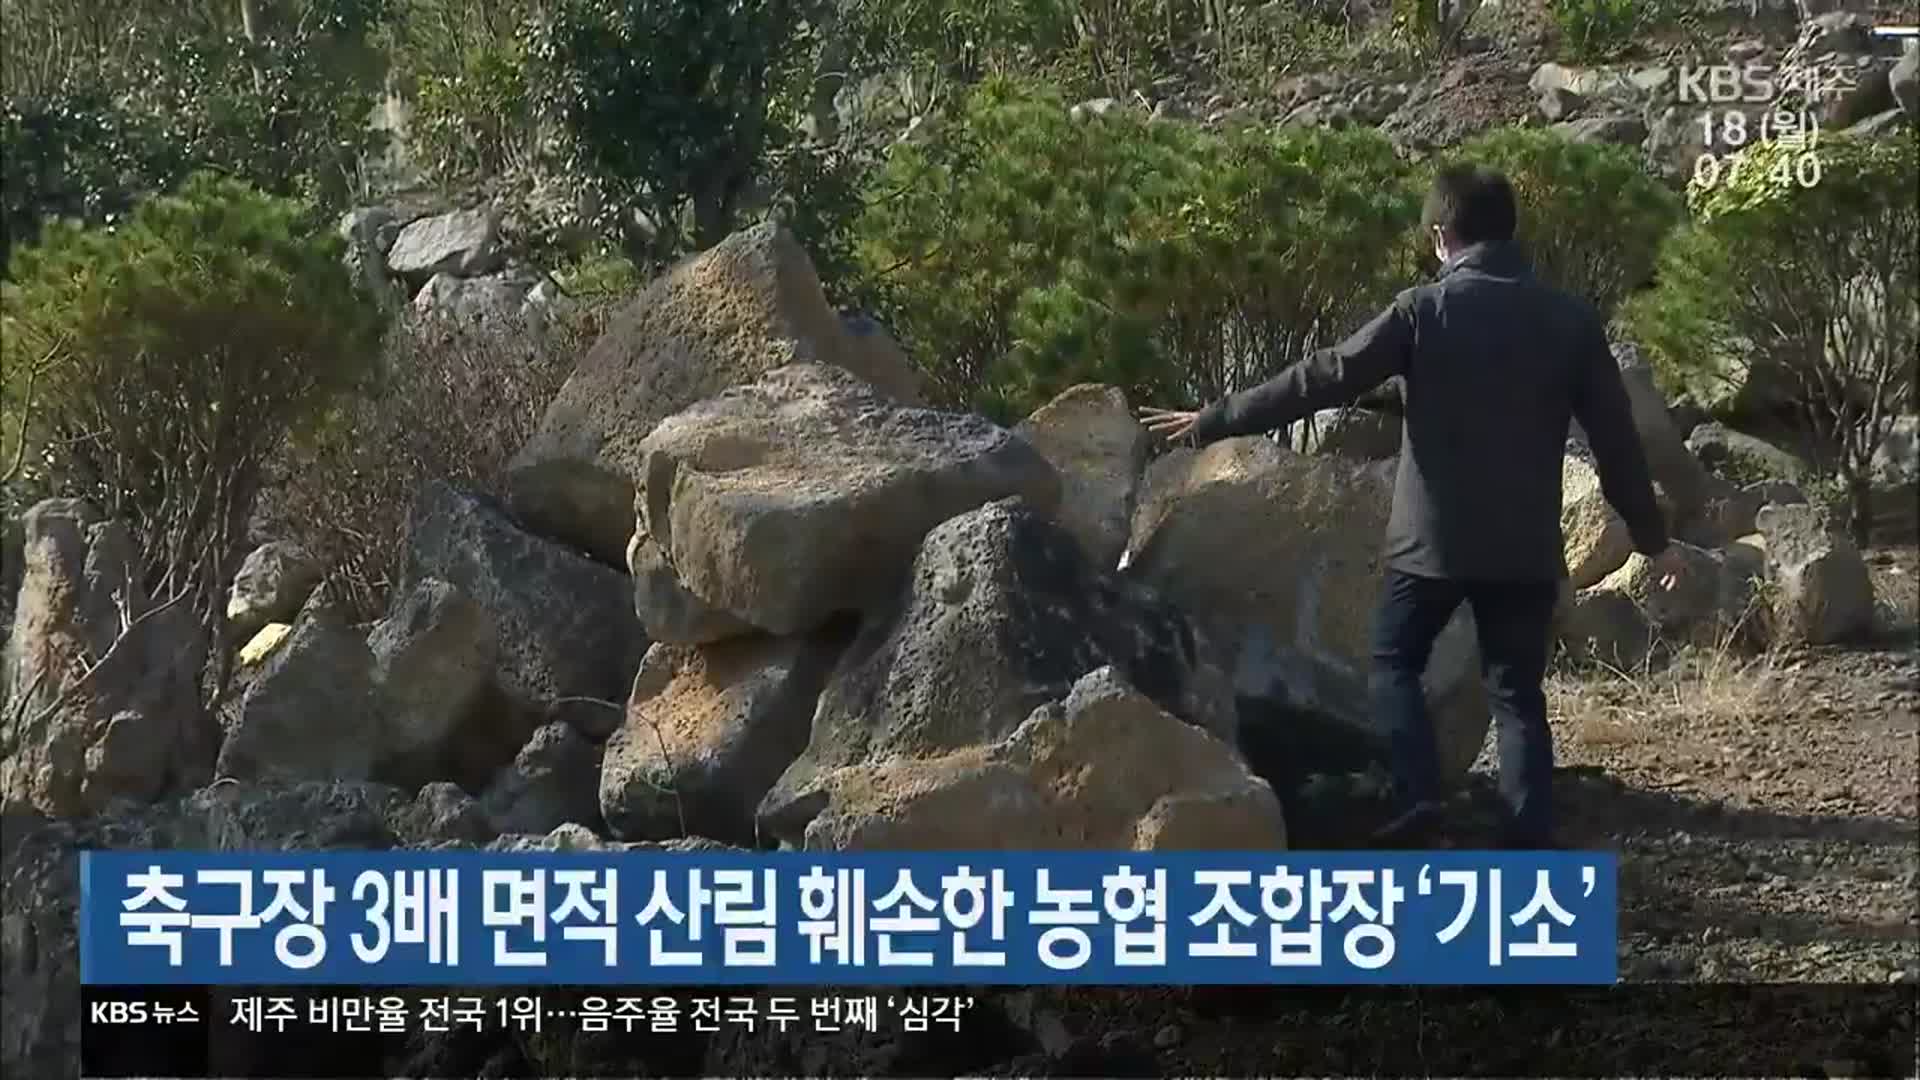 축구장 3배 면적 산림 훼손한 농협 조합장 ‘기소’